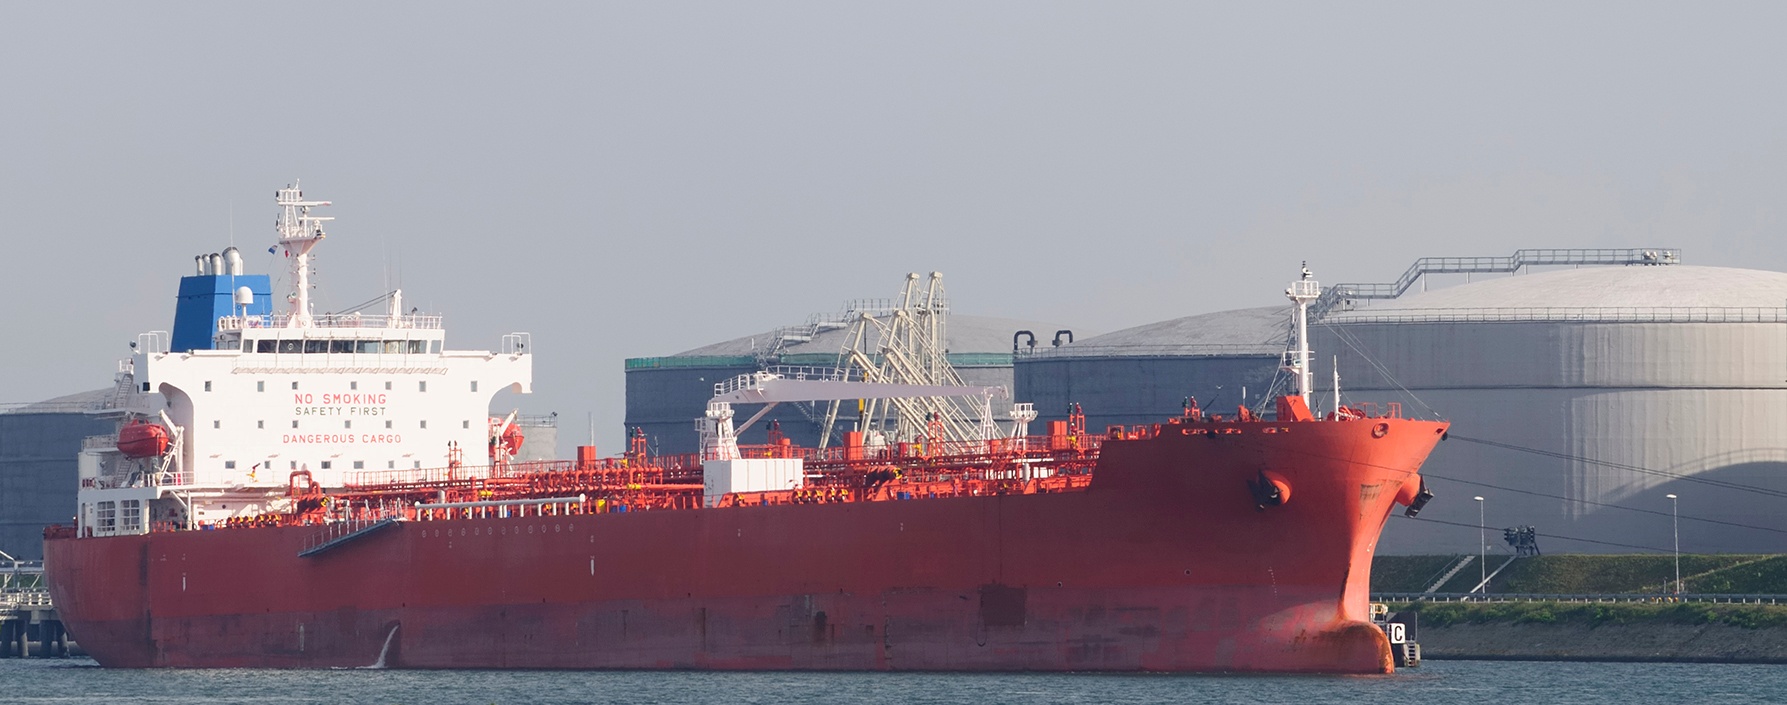 Cargo ship near oil storage